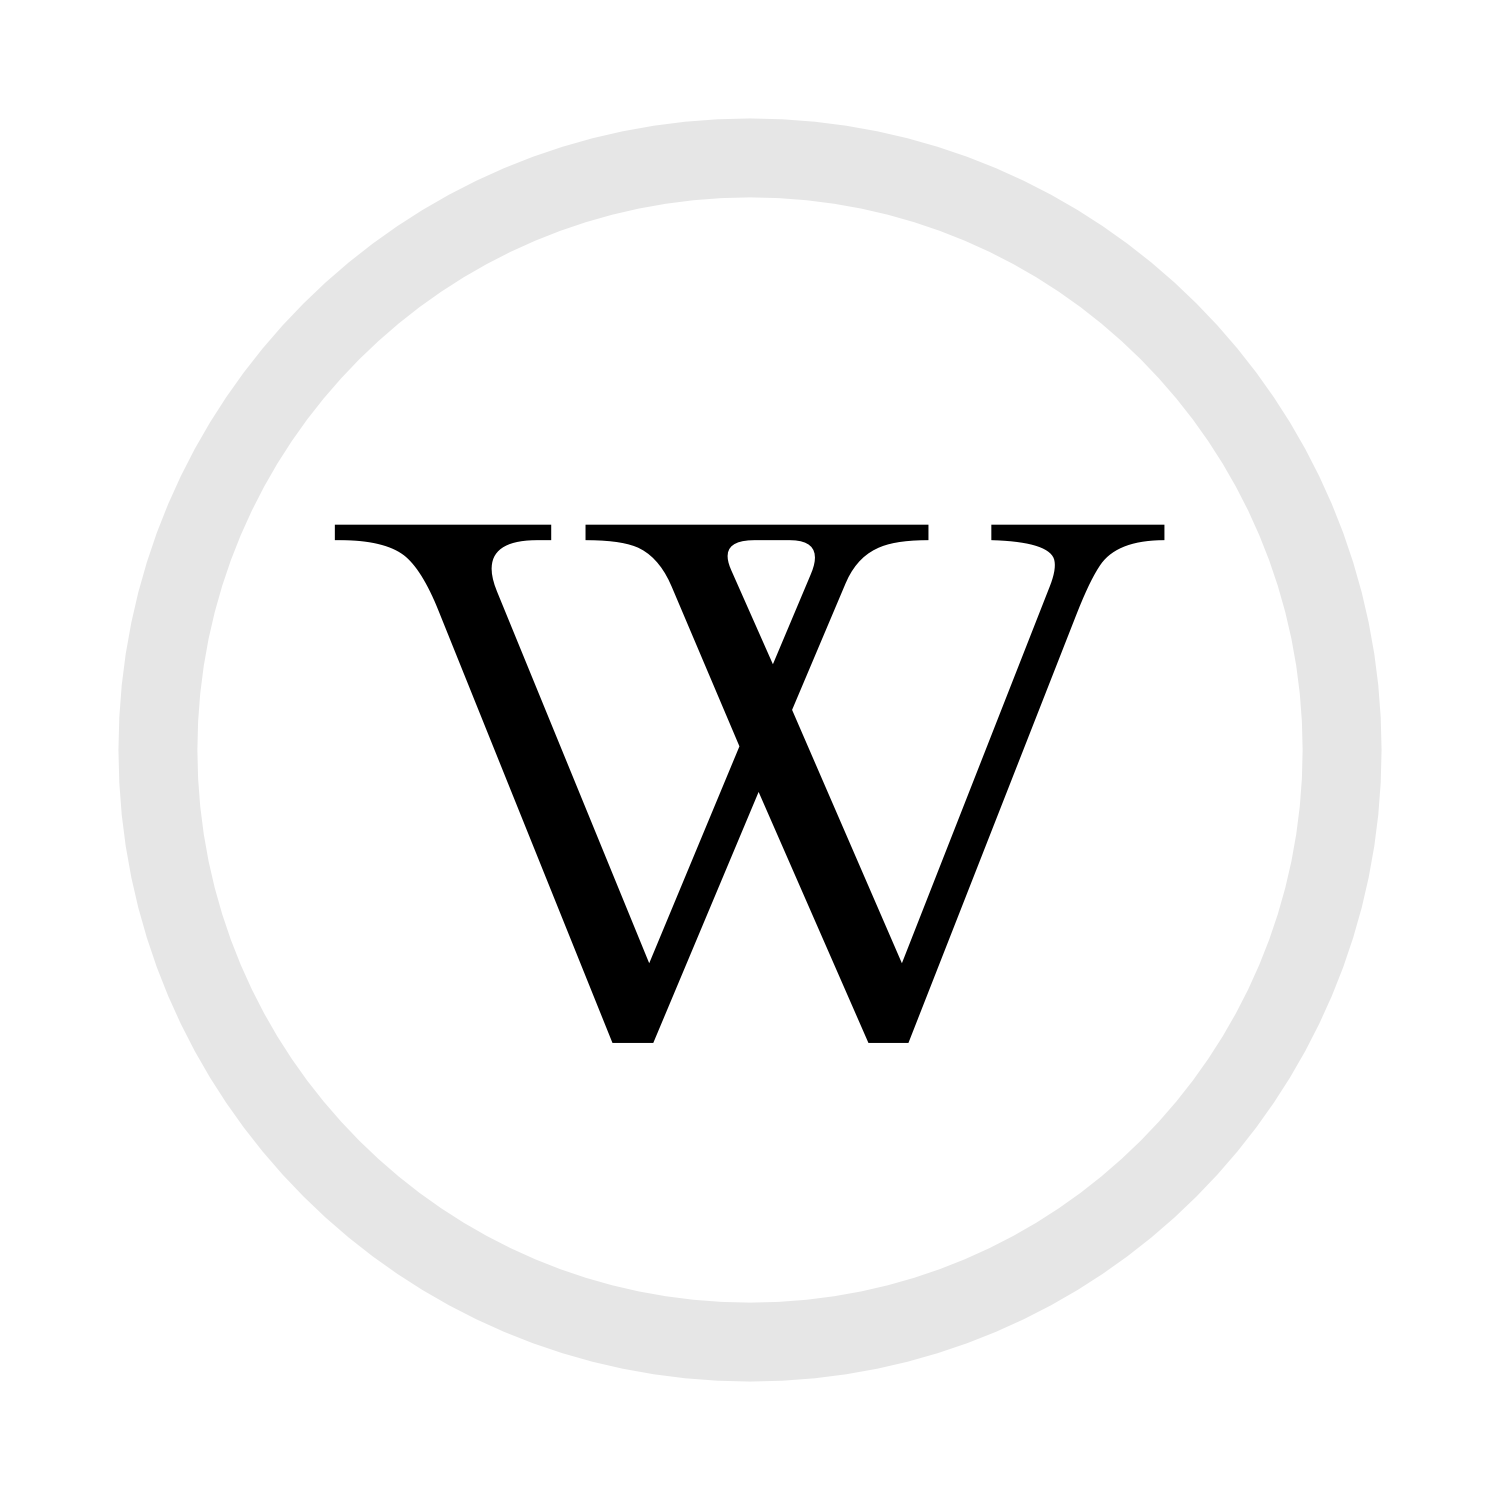 Circle W Logo - Restren:W in circle.png